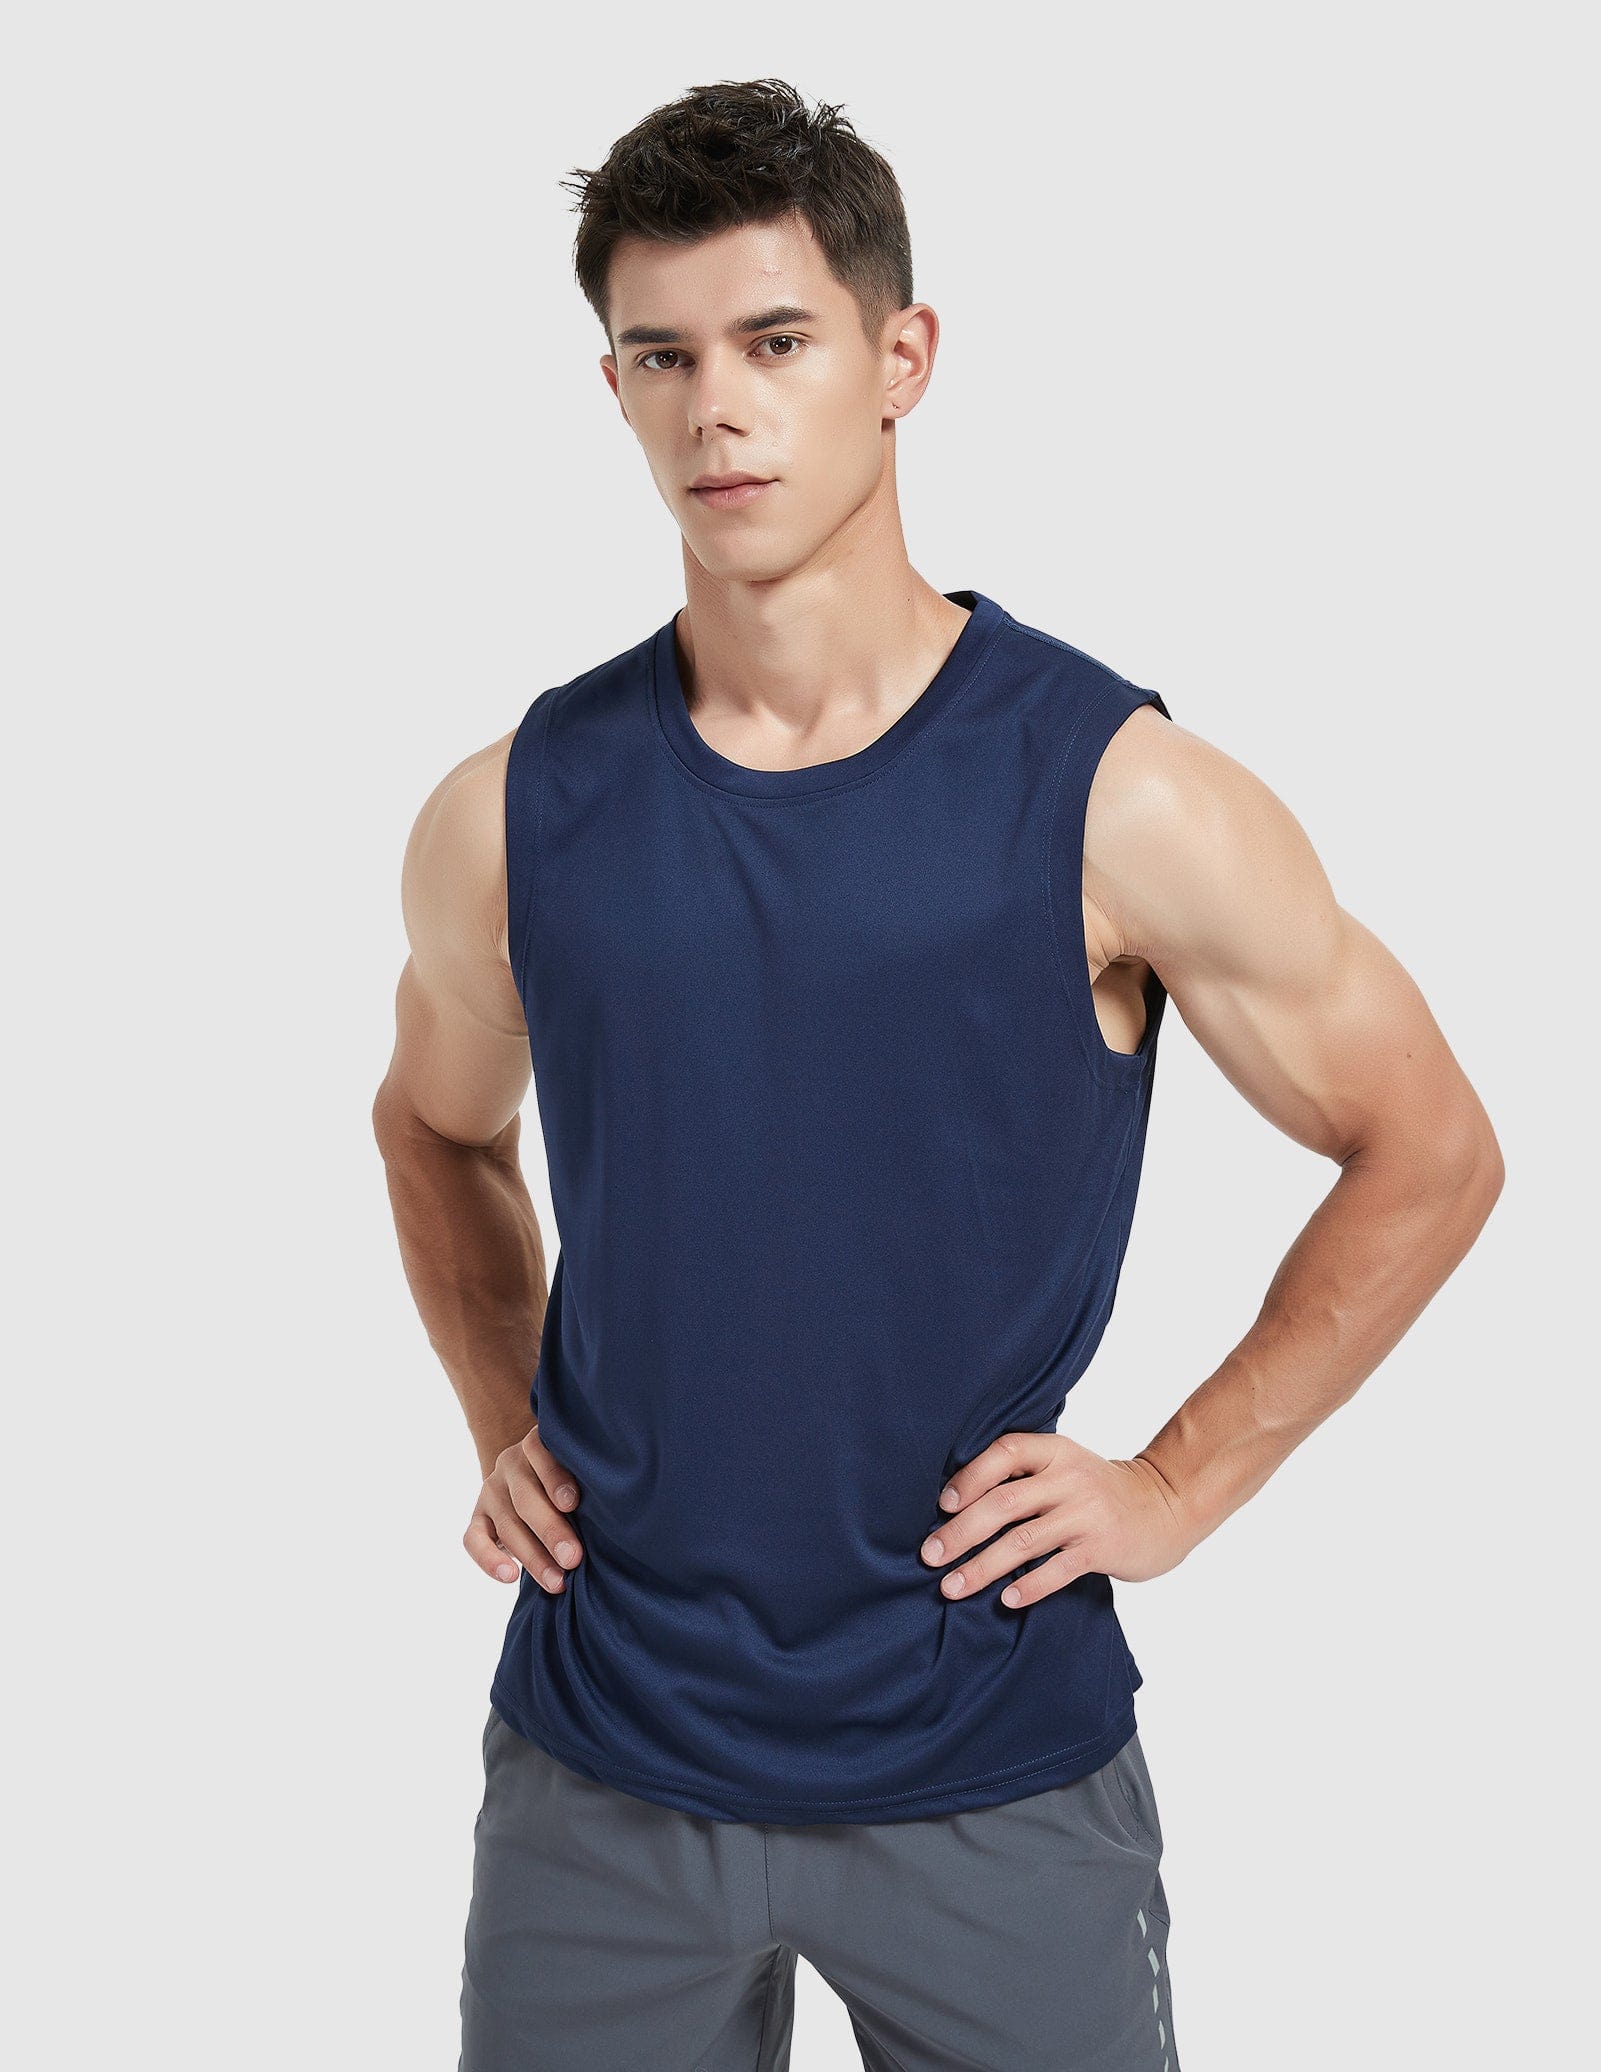 Men's Lightweight UPF 50+ Sun Shirts Quick Dry Tank Tops Men's Tank Top Dark Blue / S MIER